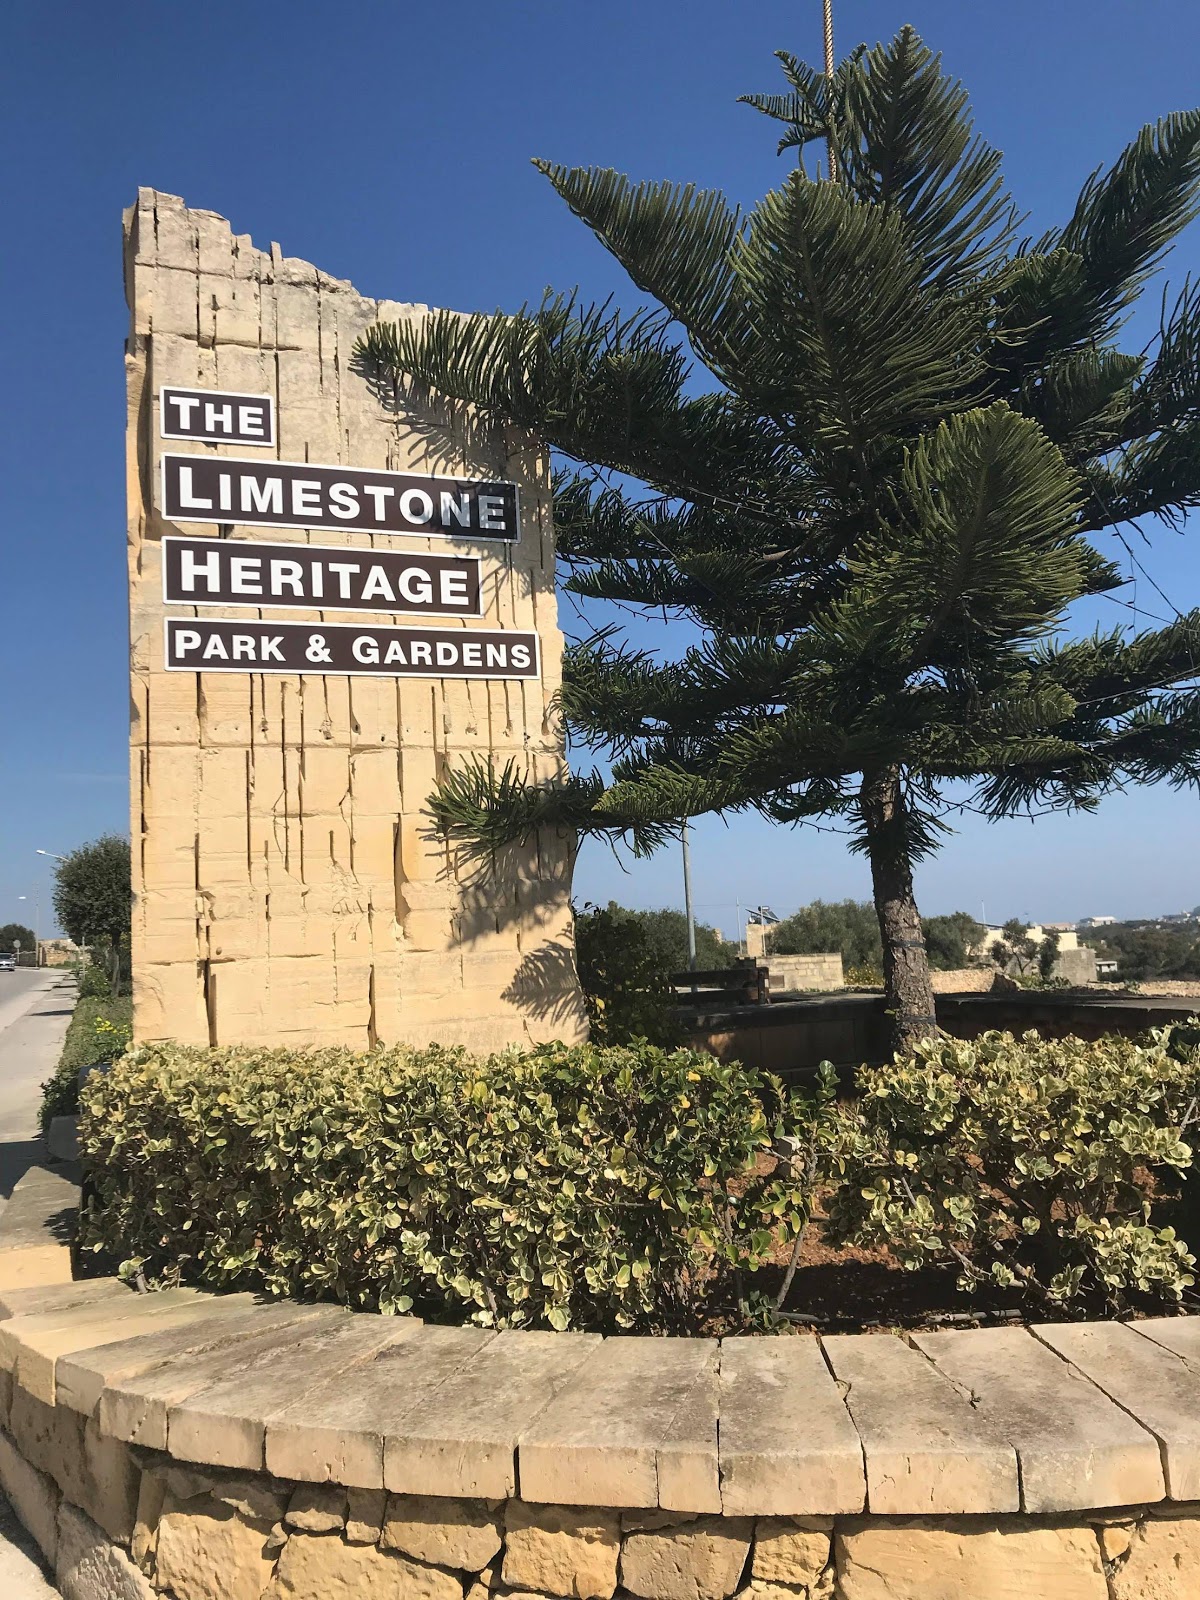 Limestone heritage